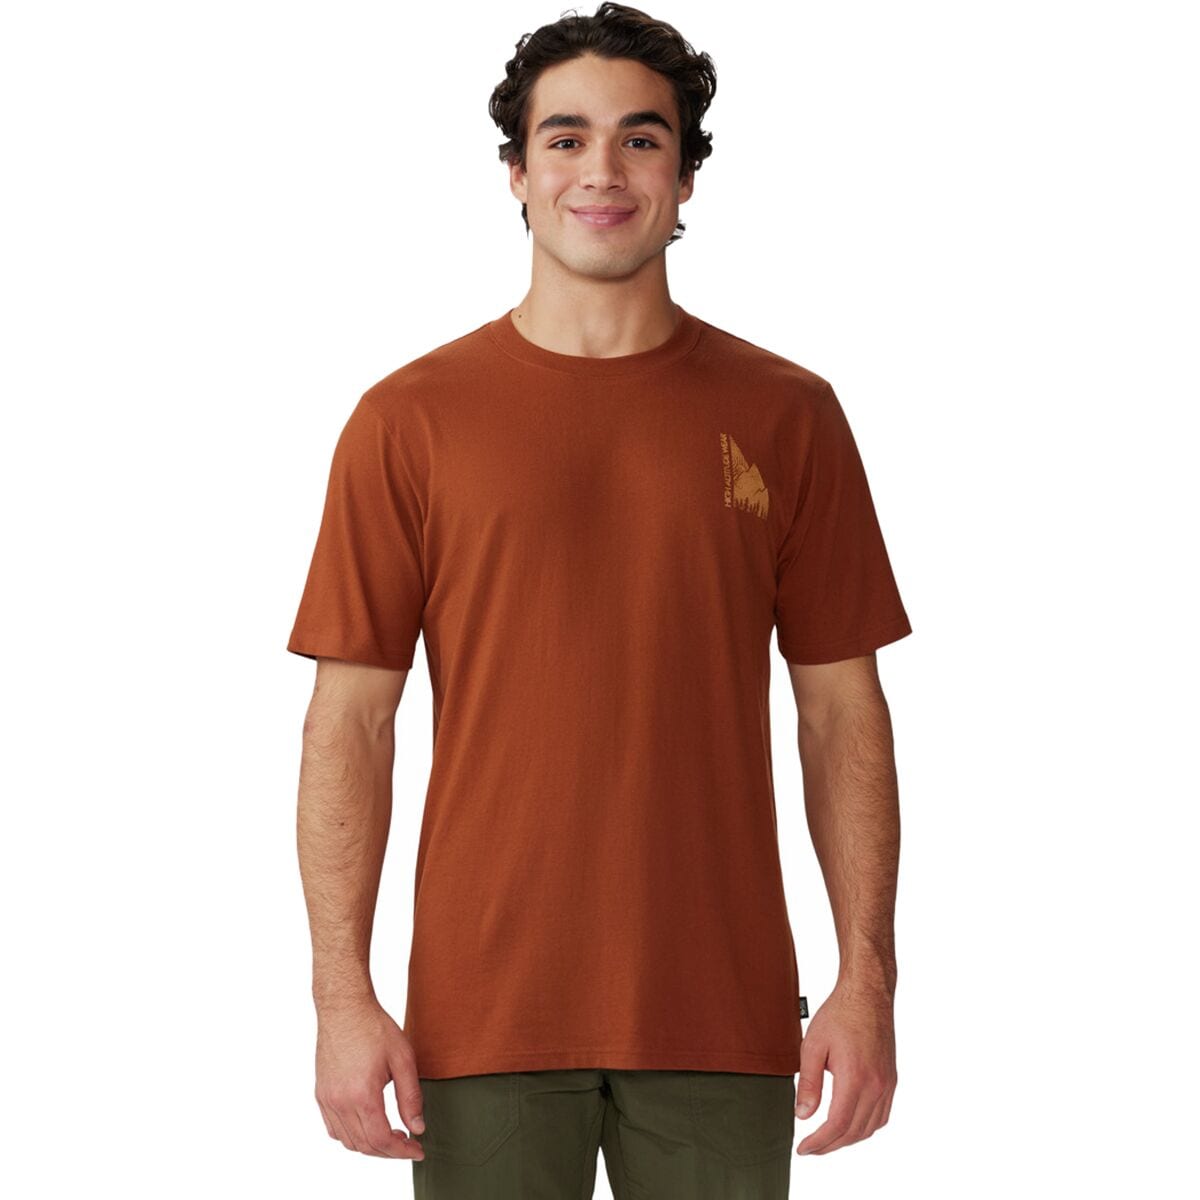 Jagged Peak Short-Sleeve T-Shirt - Men